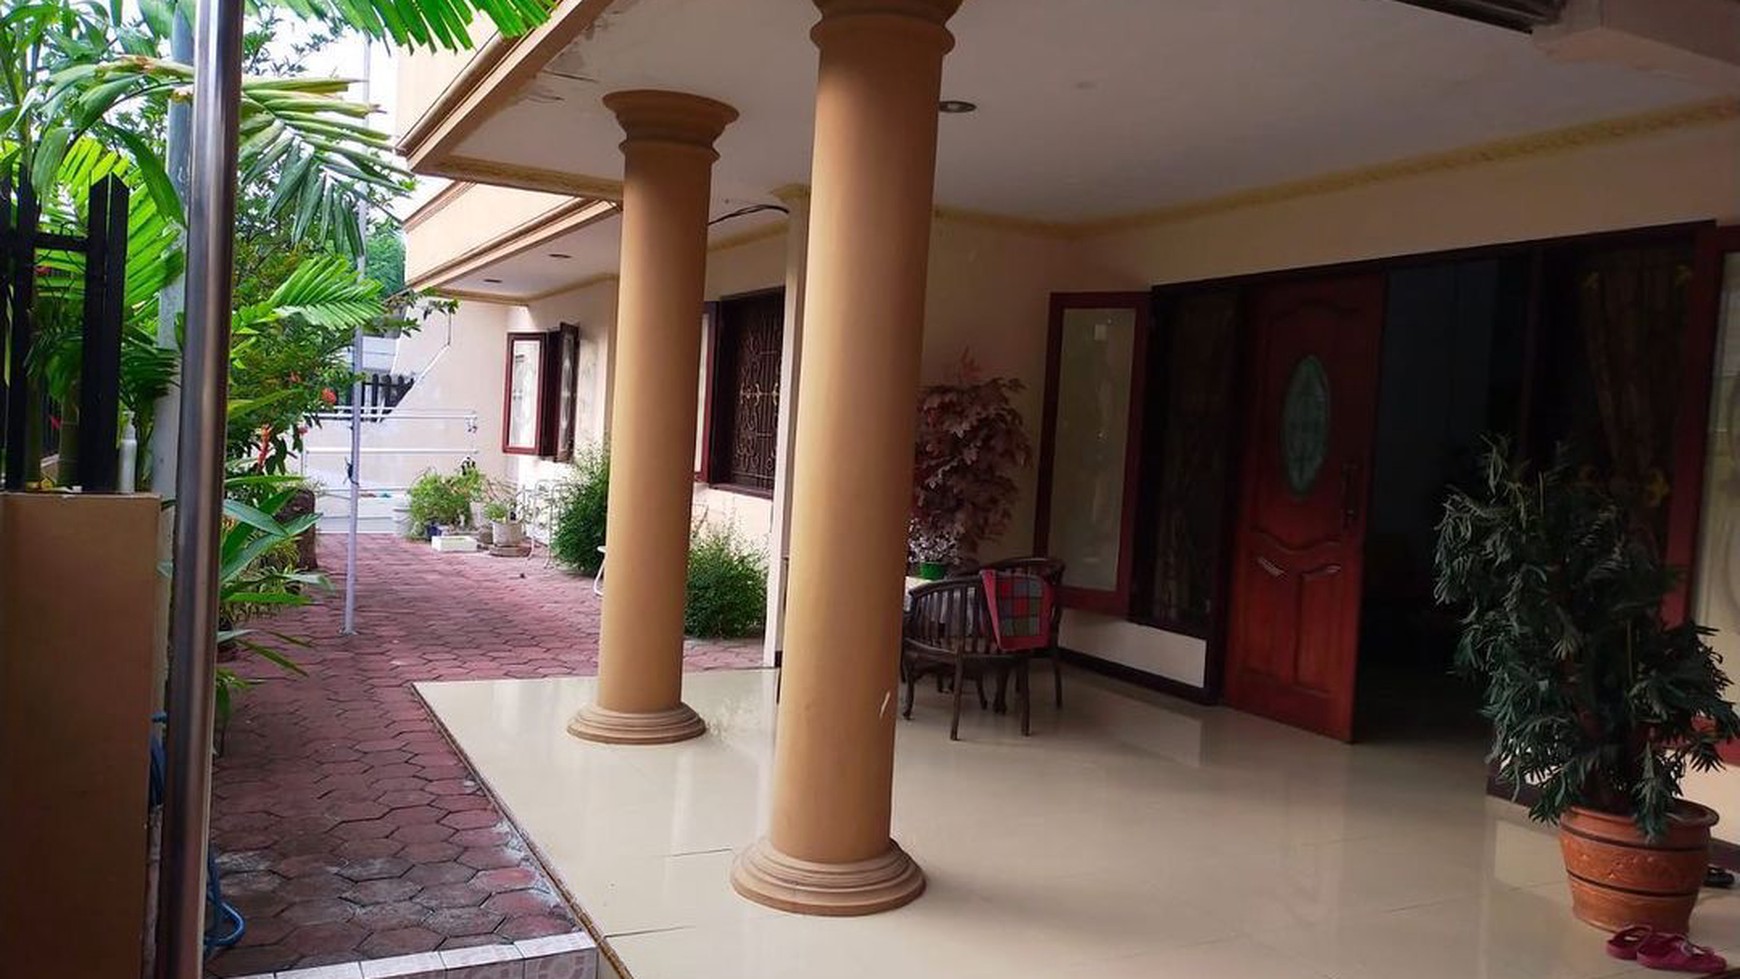 Dijual Rumah Minimalis Siap Pakai Di Darmo Permai Timur Surabaya Barat